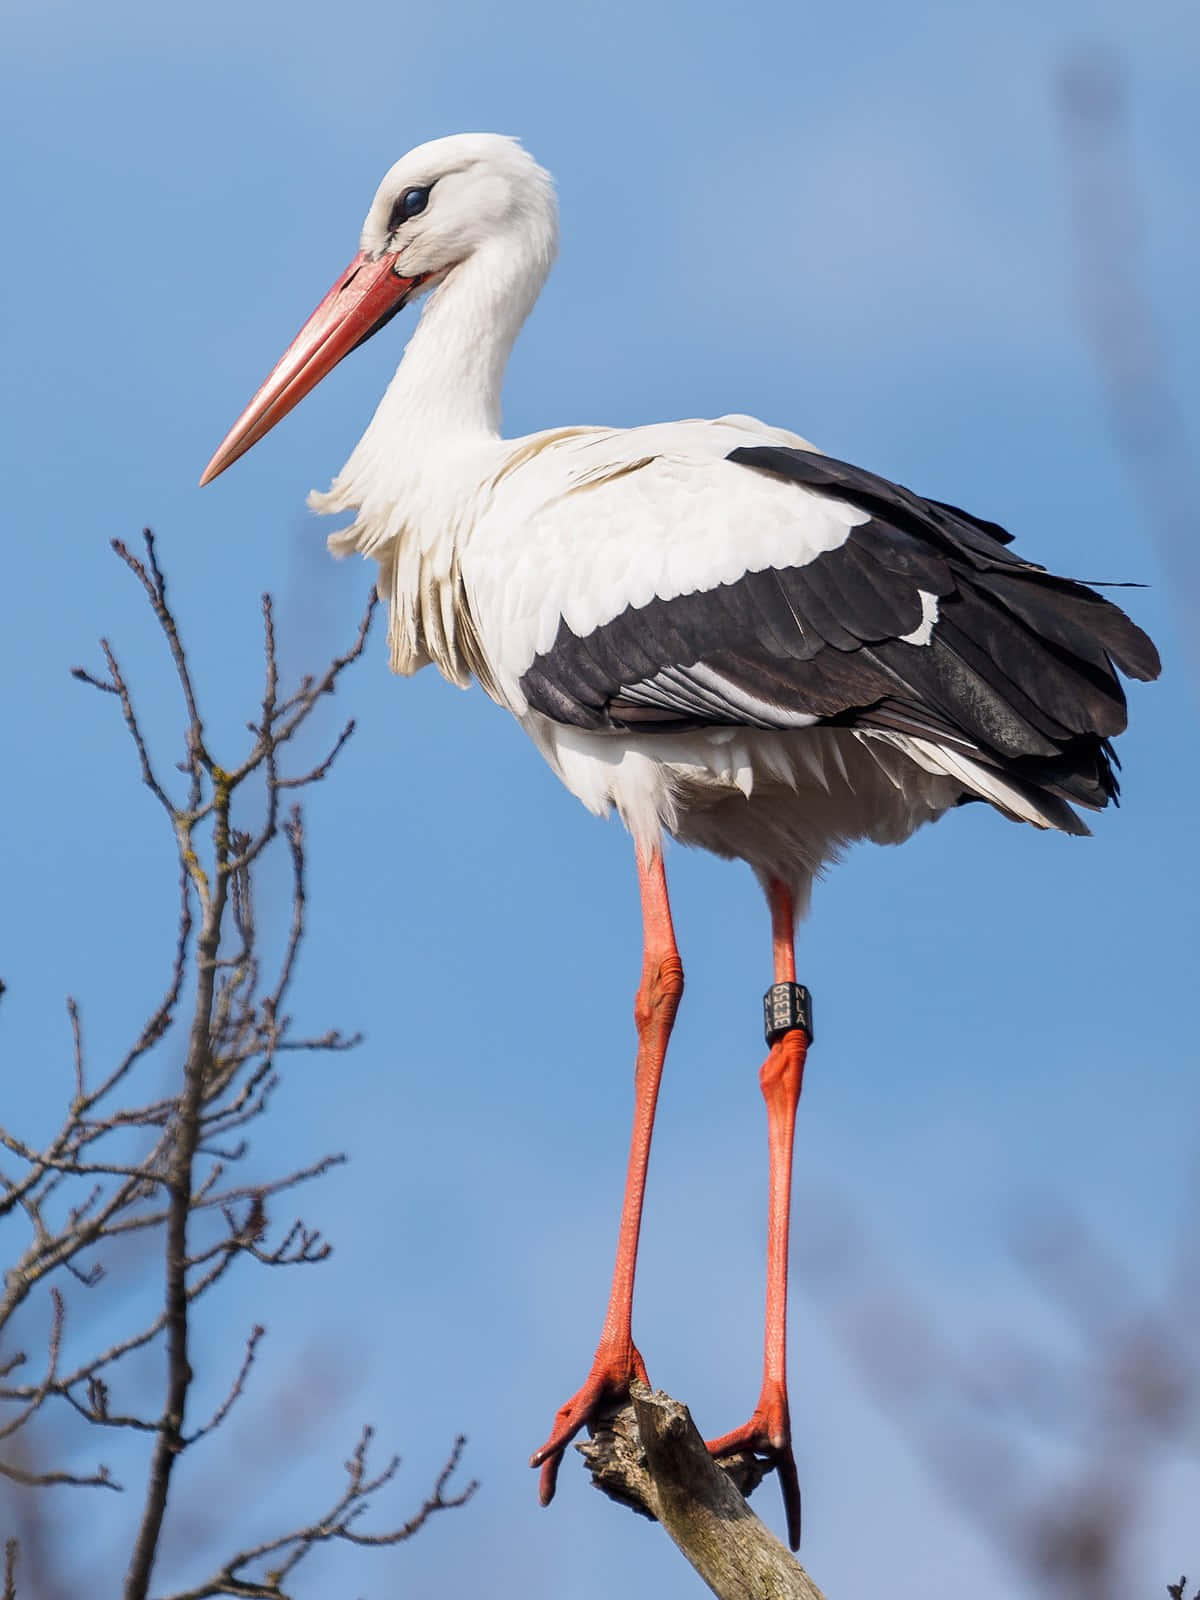 White Stork Perched Against Blue Sky.jpg Wallpaper